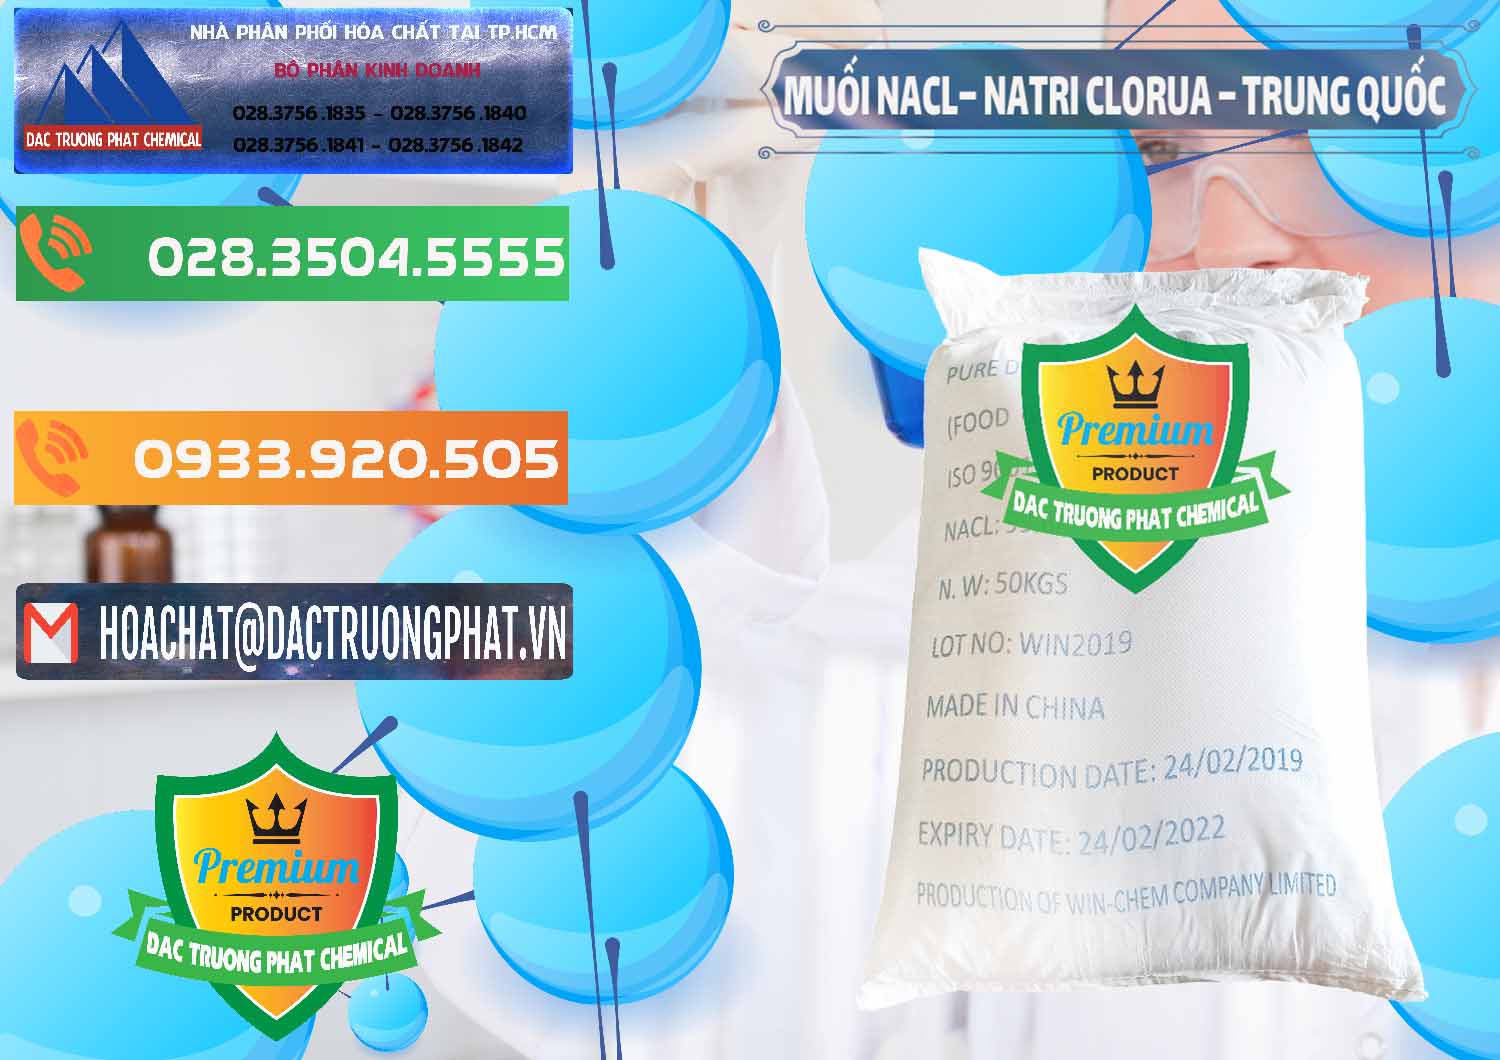 Nơi bán _ phân phối Muối NaCL – Sodium Chloride Trung Quốc China - 0097 - Cty kinh doanh - phân phối hóa chất tại TP.HCM - hoachatxulynuoc.com.vn